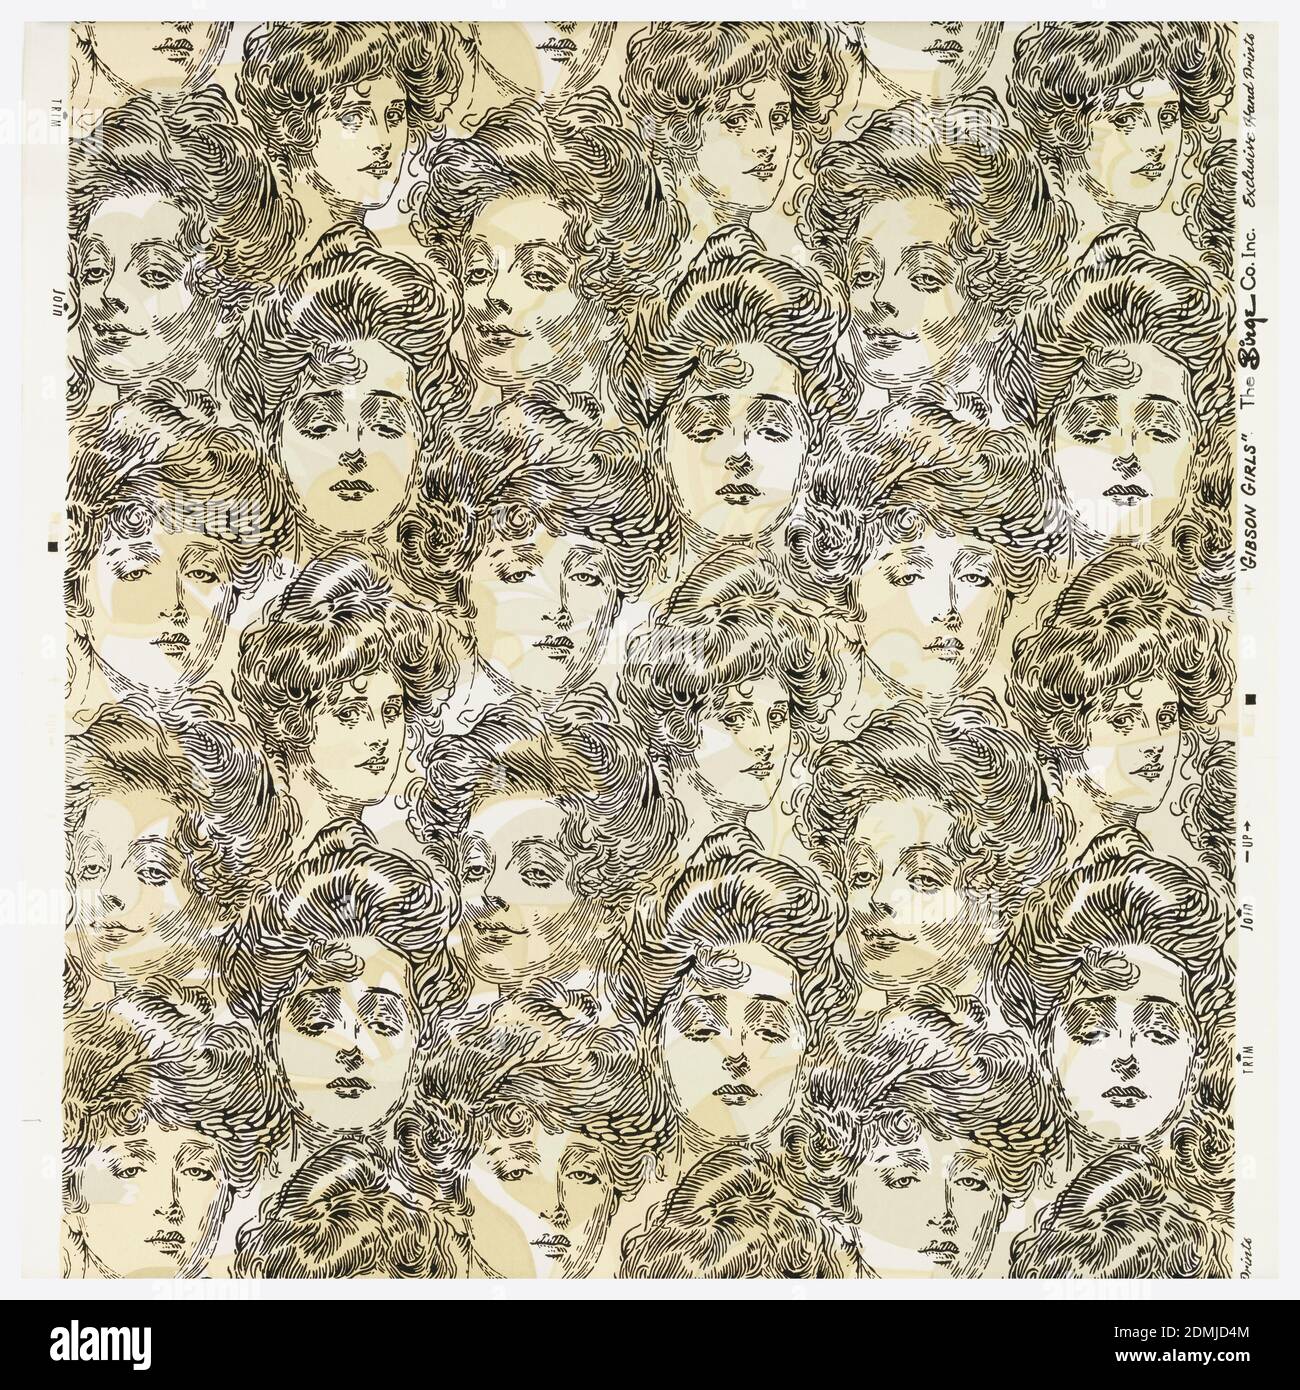 Bachelor's Wall Paper, Charles Dana Gibson, American, 1867–1944, M.H. Birge & Sons Co., 1834, maschinenbedrucktes Papier, ein sich wiederholendes Muster mit den Gesichtern von Charles Dana Gibsons unverwechselbaren 'Gibson Girls'. A) die Gesichter sind in Schwarz mit hellblauen Farbflecken für die Haare gedruckt, auf einem cremefarbenen Grund. 'A' ist maschinell gedruckt; b) eine 1969 Birge Reproduktion des Originals. Das gleiche Design wie 'A', aber umgekehrt und etwas größer. Die Gesichter sind in schwarz auf einem möglicherweise 3-farbigen Blumengrund mit dem Aussehen einer Tarnung gedruckt. 'b' ist Siebdruck., Buffalo, New York, USA Stockfoto